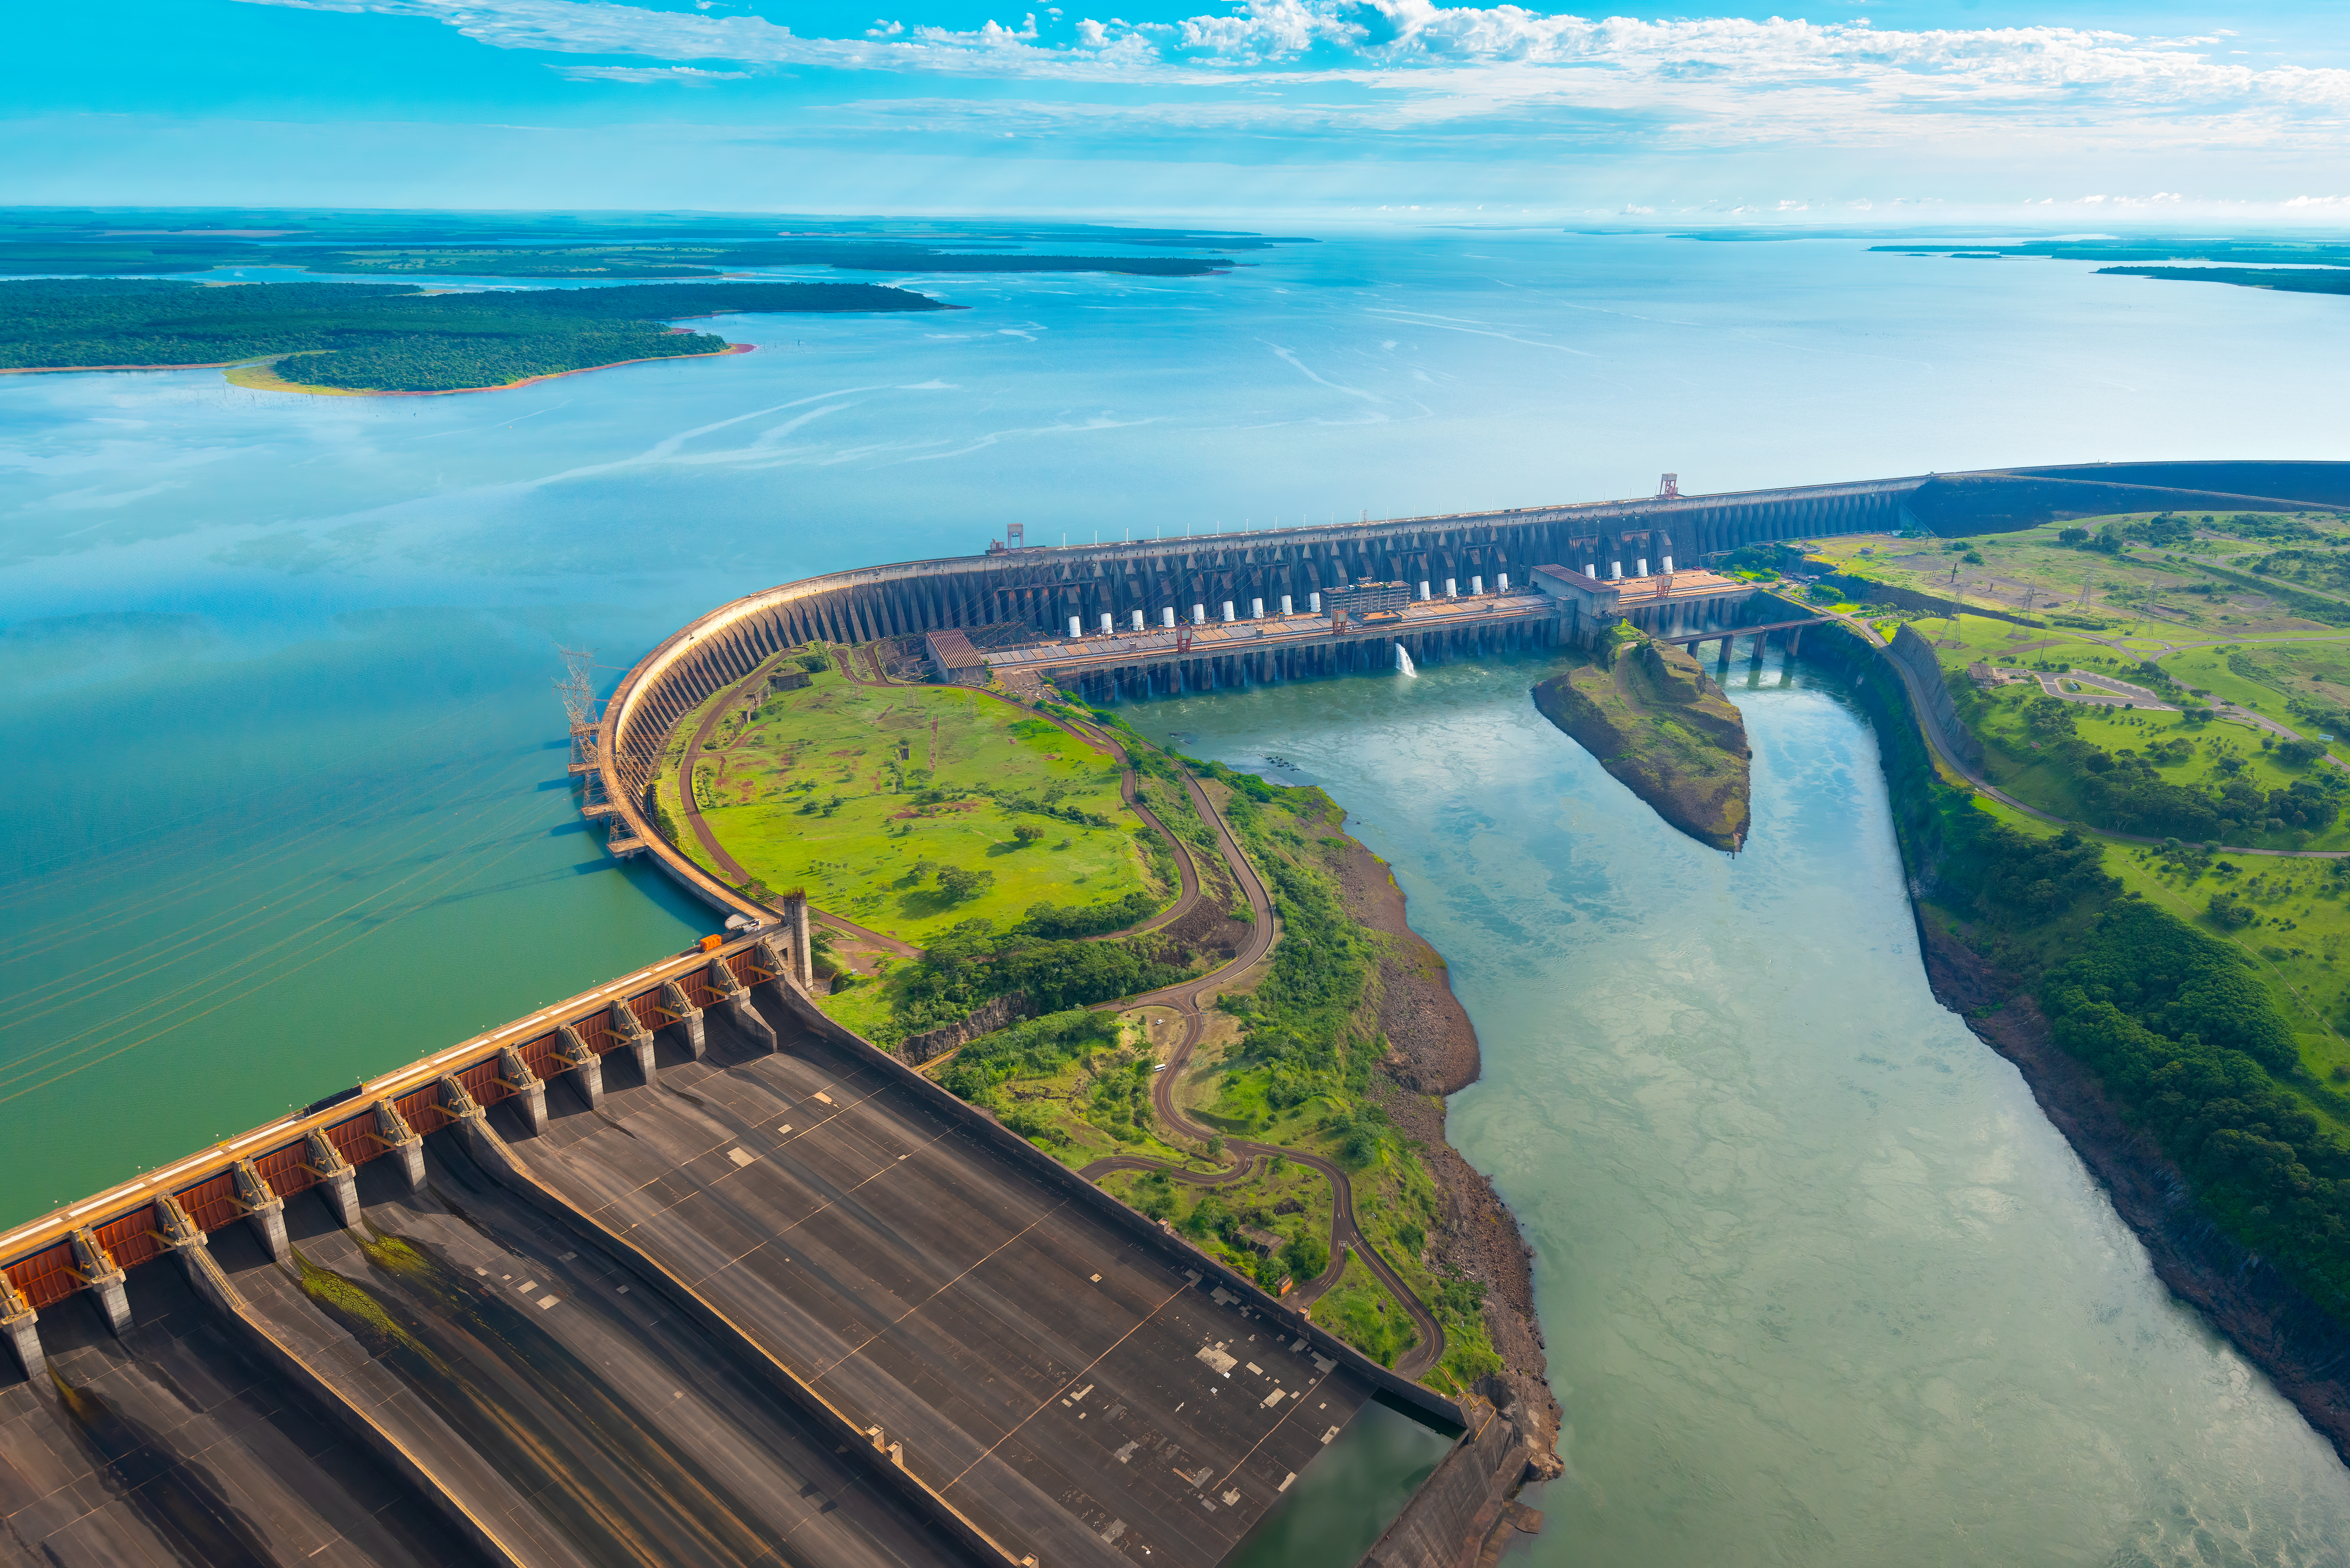 Das Itaipu Wasserkraftwerk zwischen Paraguay und Brasilien. Die Wasseroberfläche hinter dem Kraftwerk spiegelt den Himmel wieder. In östlicher Richtung fließt das Wasser des Kraftwerks wieder ab.